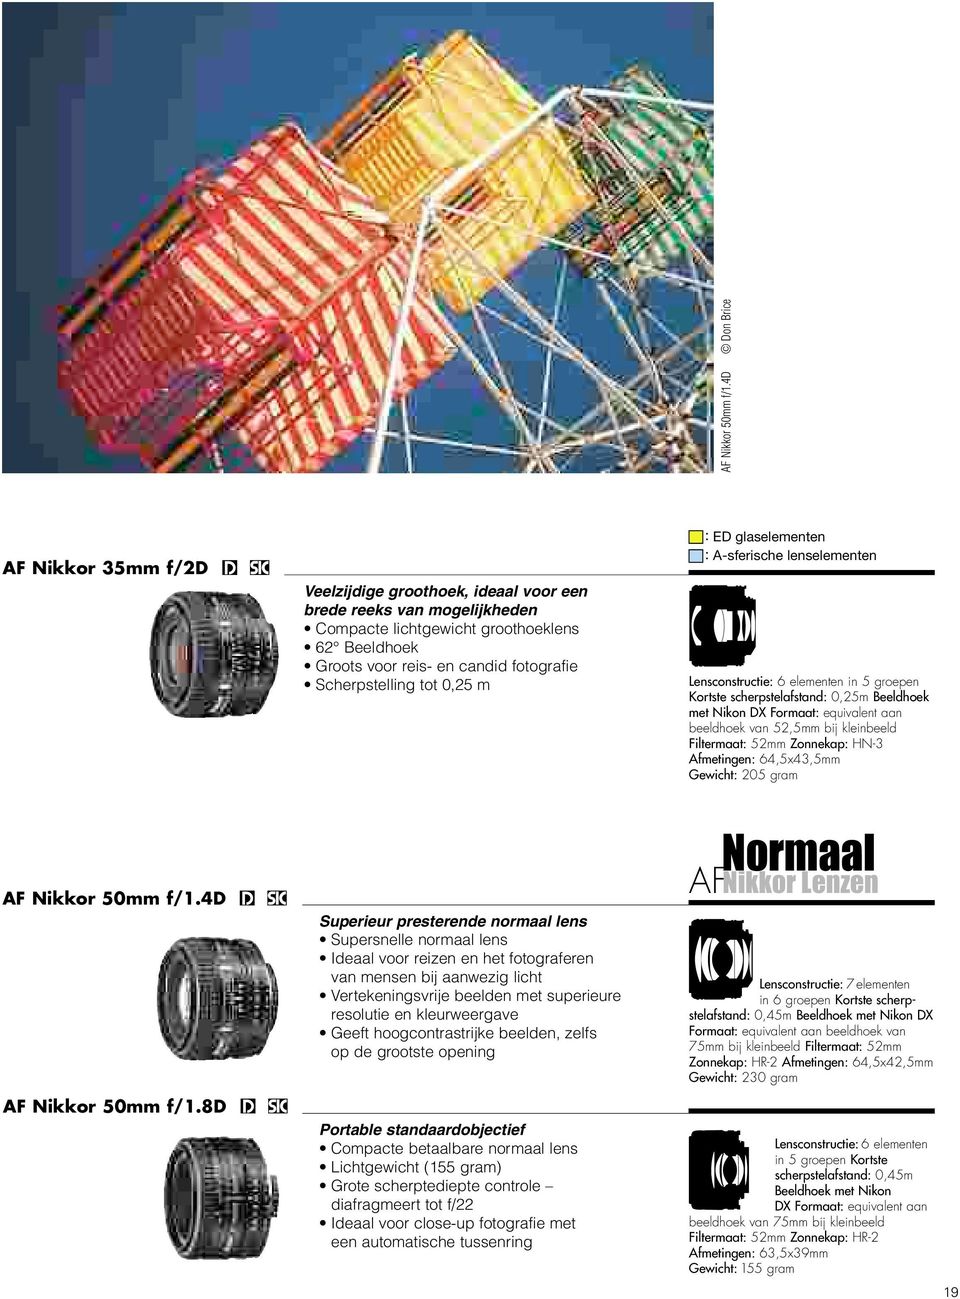 Scherpstelling tot 0,25 m : ED glaselementen : A-sferische lenselementen Lensconstructie: 6 elementen in 5 groepen Kortste scherpstelafstand: 0,25m Beeldhoek beeldhoek van 52,5mm bij kleinbeeld